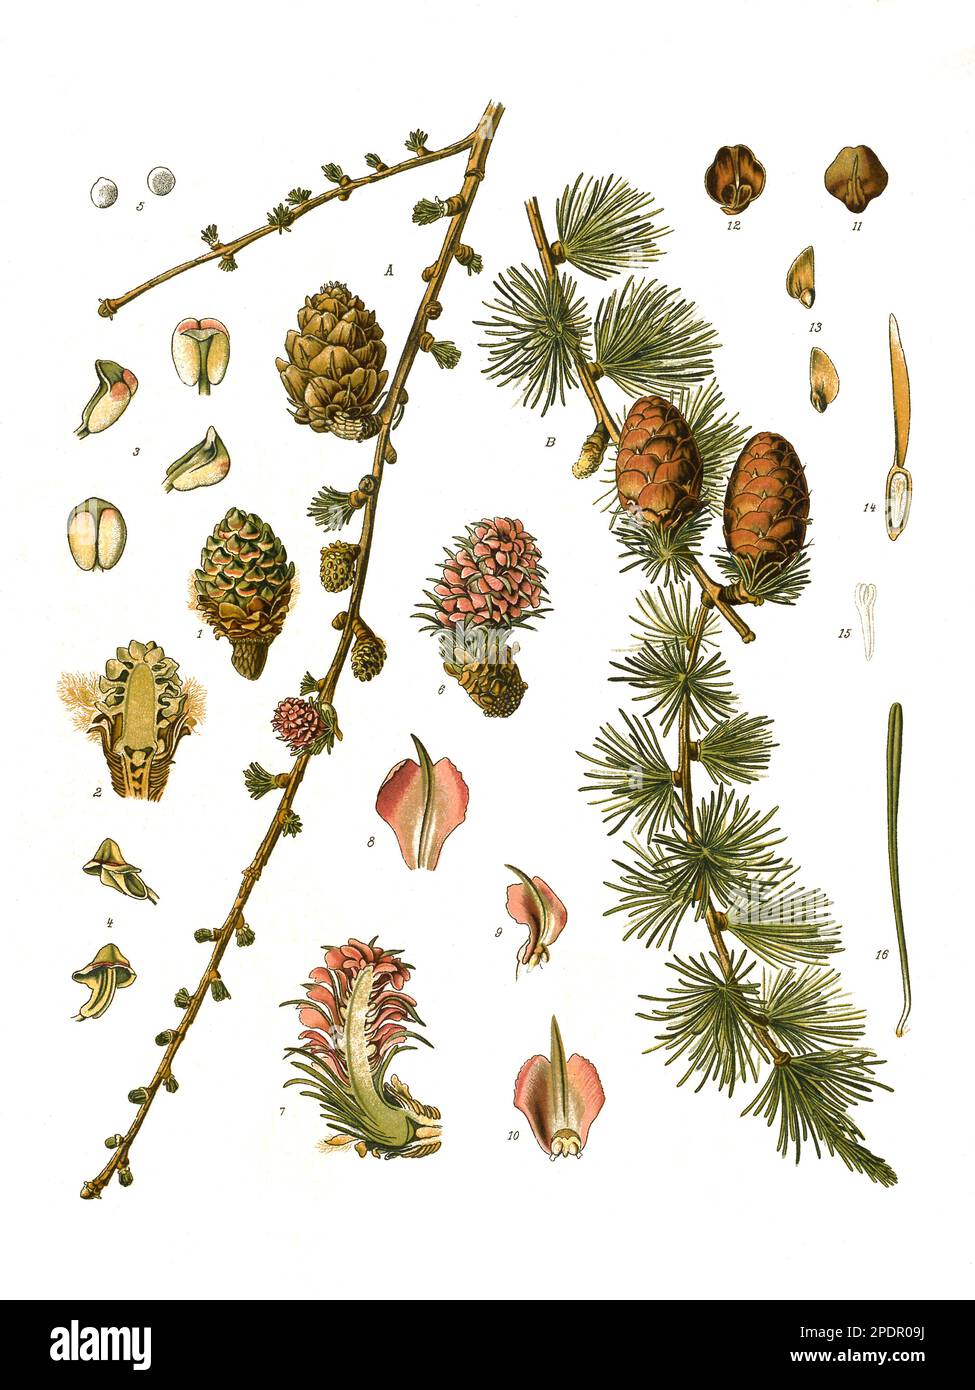 Heilpflanze, Europäische Lärche, Larix decidua, Historisch, digital restaurierte Reproduktion von einer Vorlage aus dem 19. Jahrhundert, Stock Photo